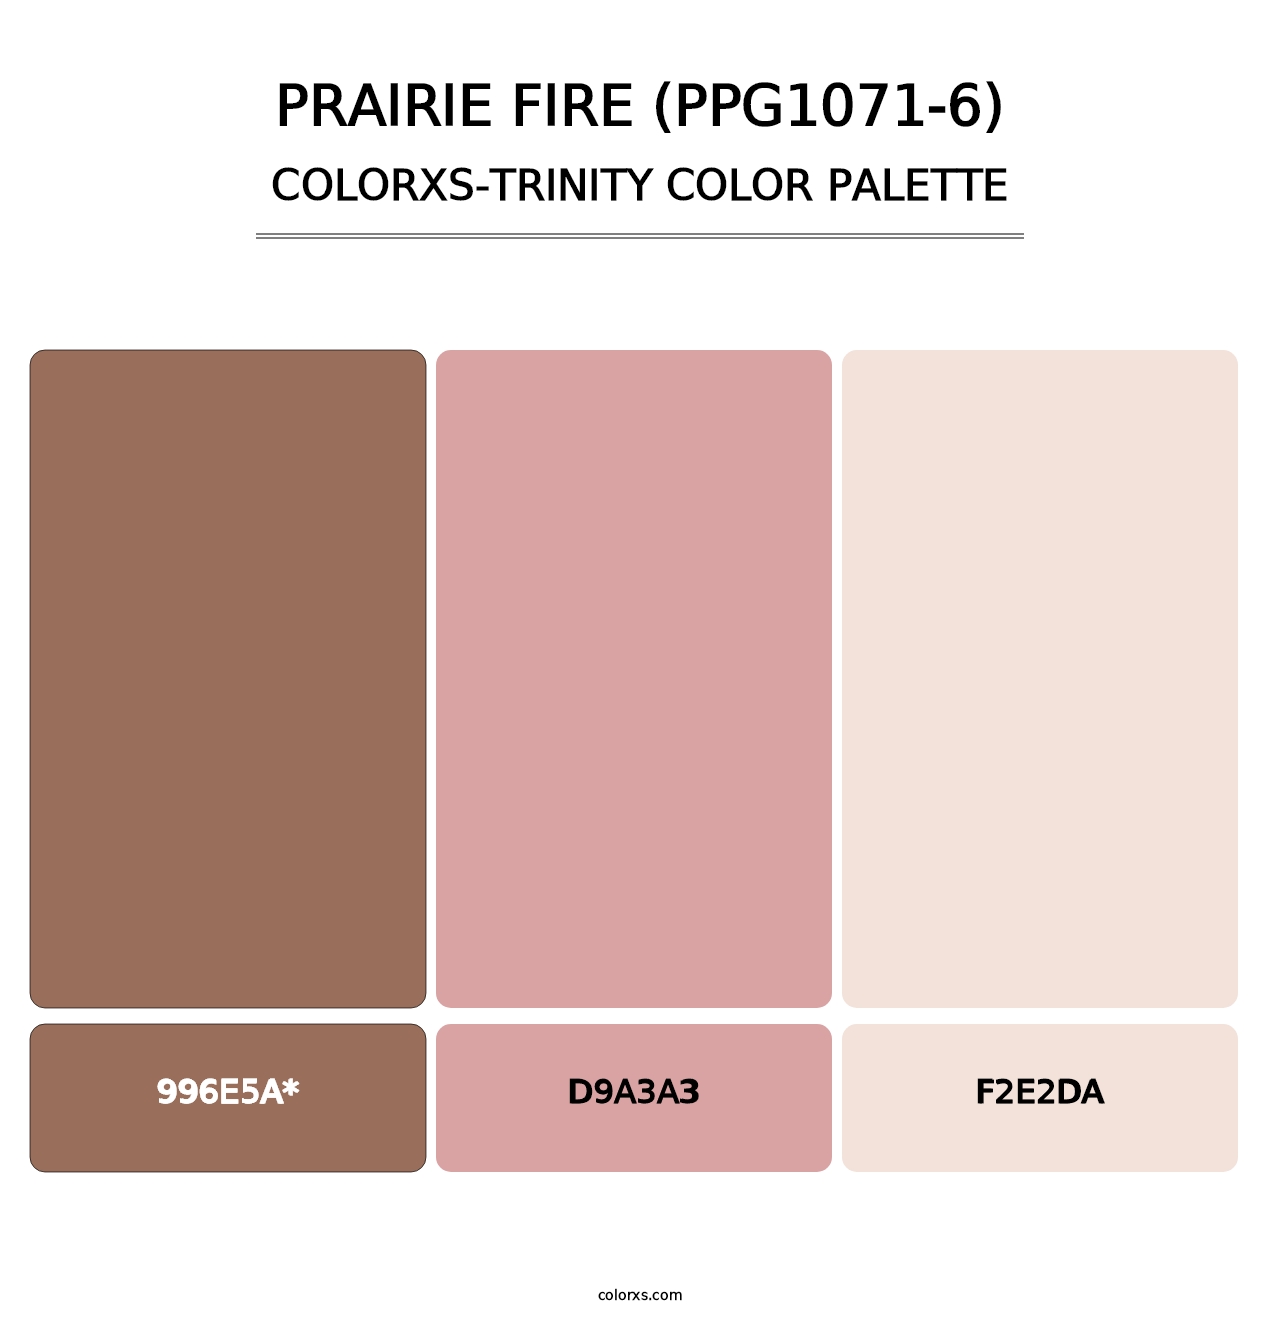 Prairie Fire (PPG1071-6) - Colorxs Trinity Palette